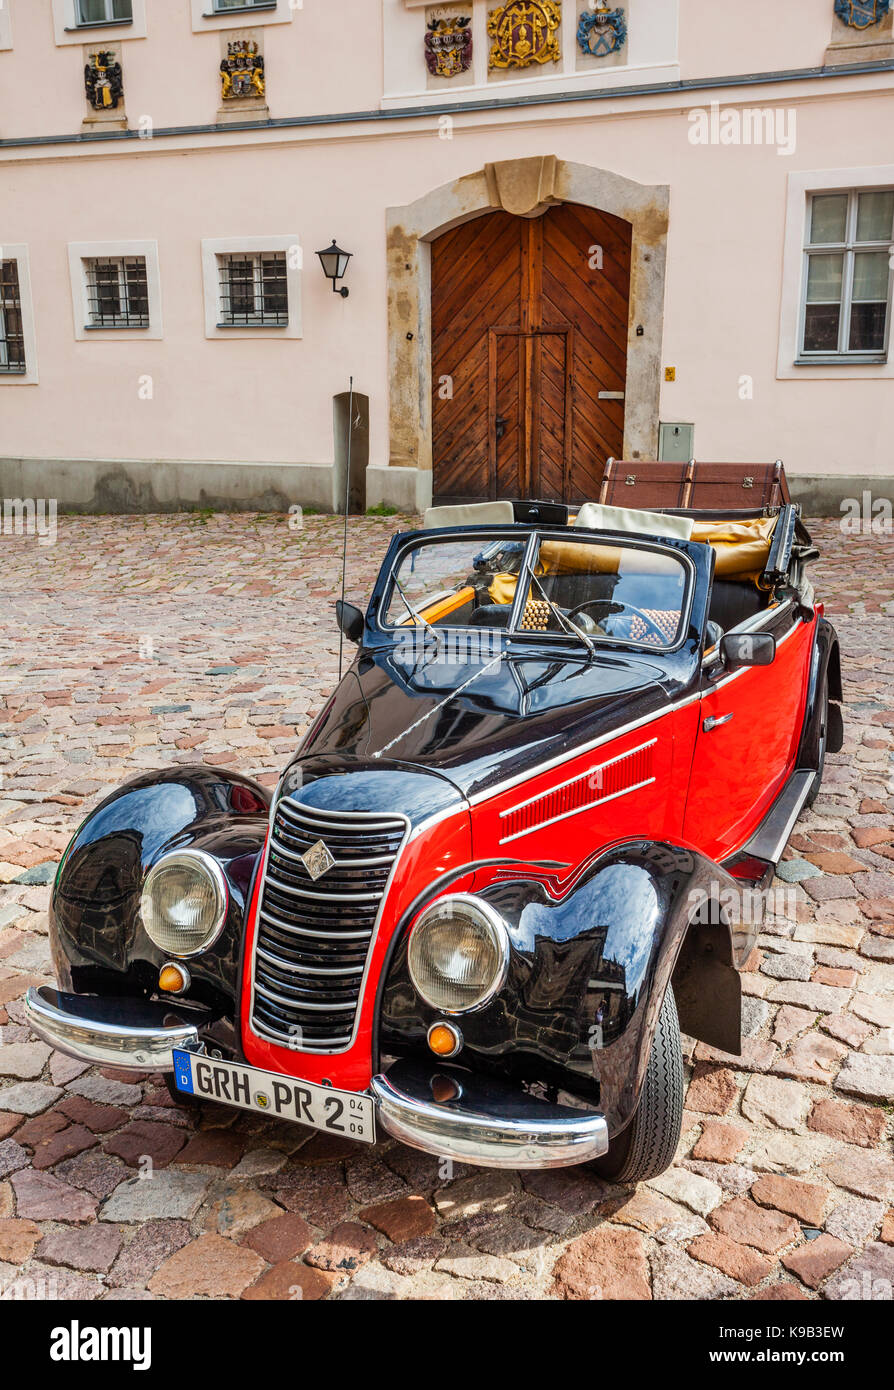 Allemagne, Saxe, Meissen, l'IFA oldtimer convertibles sur la place de la cathédrale, la colline du château Albrechtsburg Banque D'Images